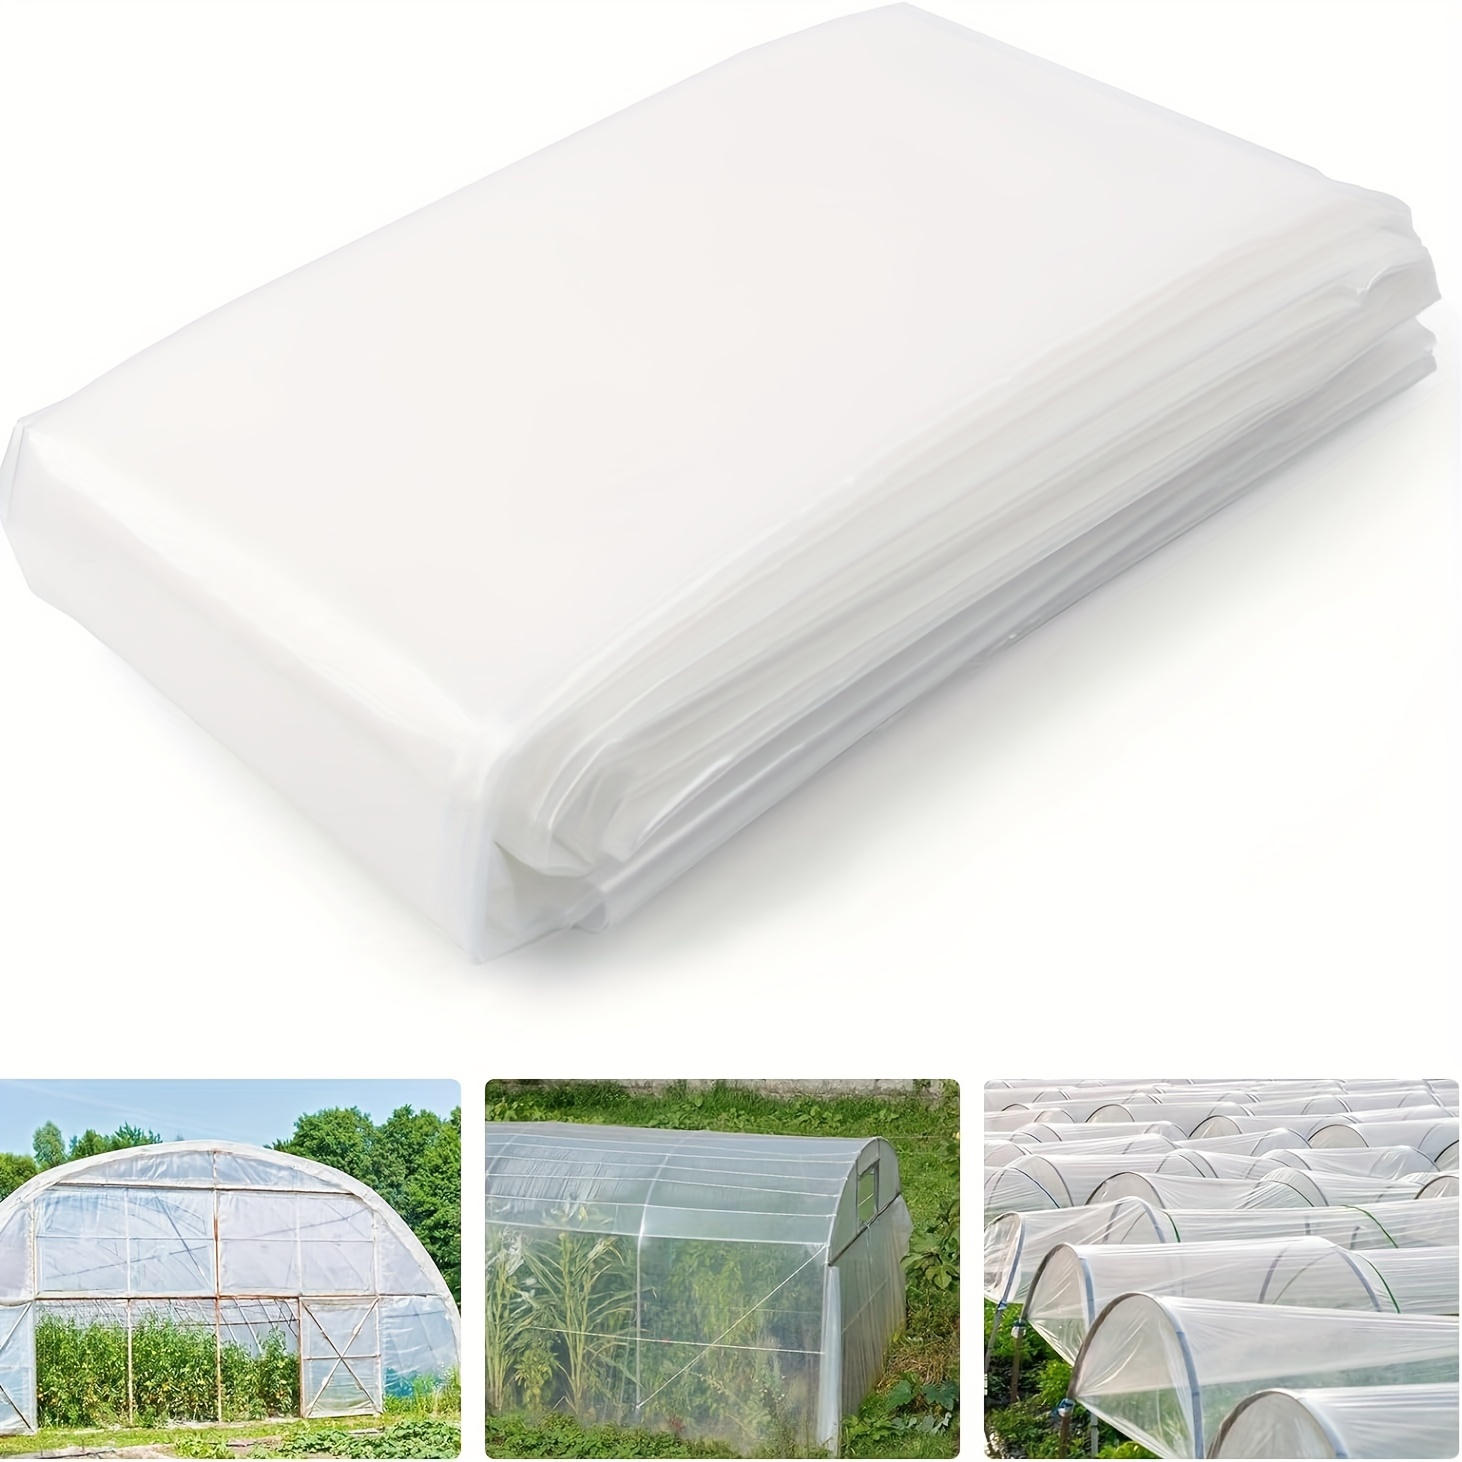 Película de polietileno para invernadero, película de plástico transparente  para invernadero, muebles de jardín de invernadero es a prueba de polvo